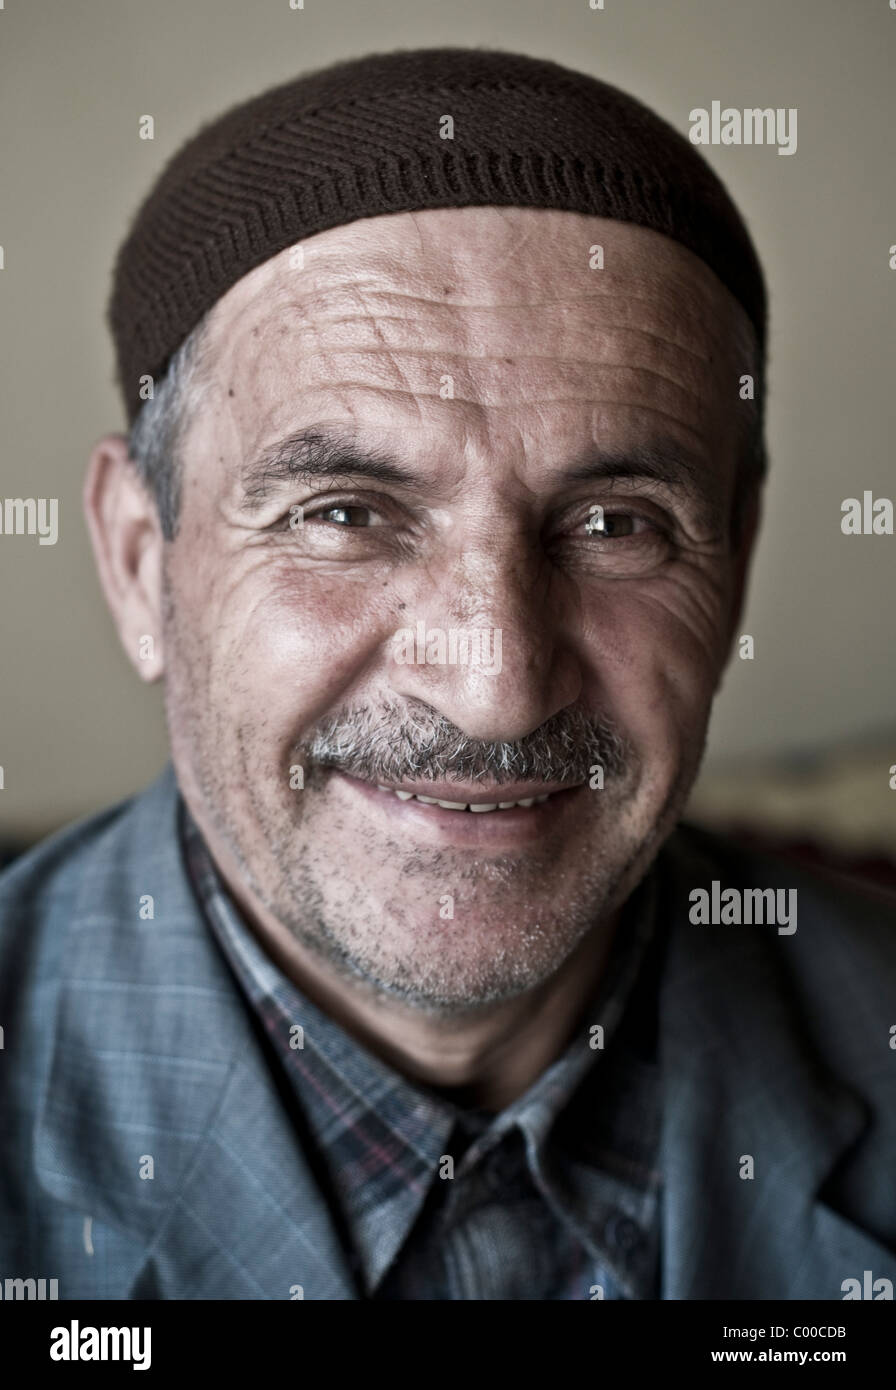 Portrait d'un vieil homme kurde, imam musulman, portant une tête de crânienne, à Bahcesaray, dans la région orientale de l'Anatolie, dans le sud-est de la Turquie. Banque D'Images